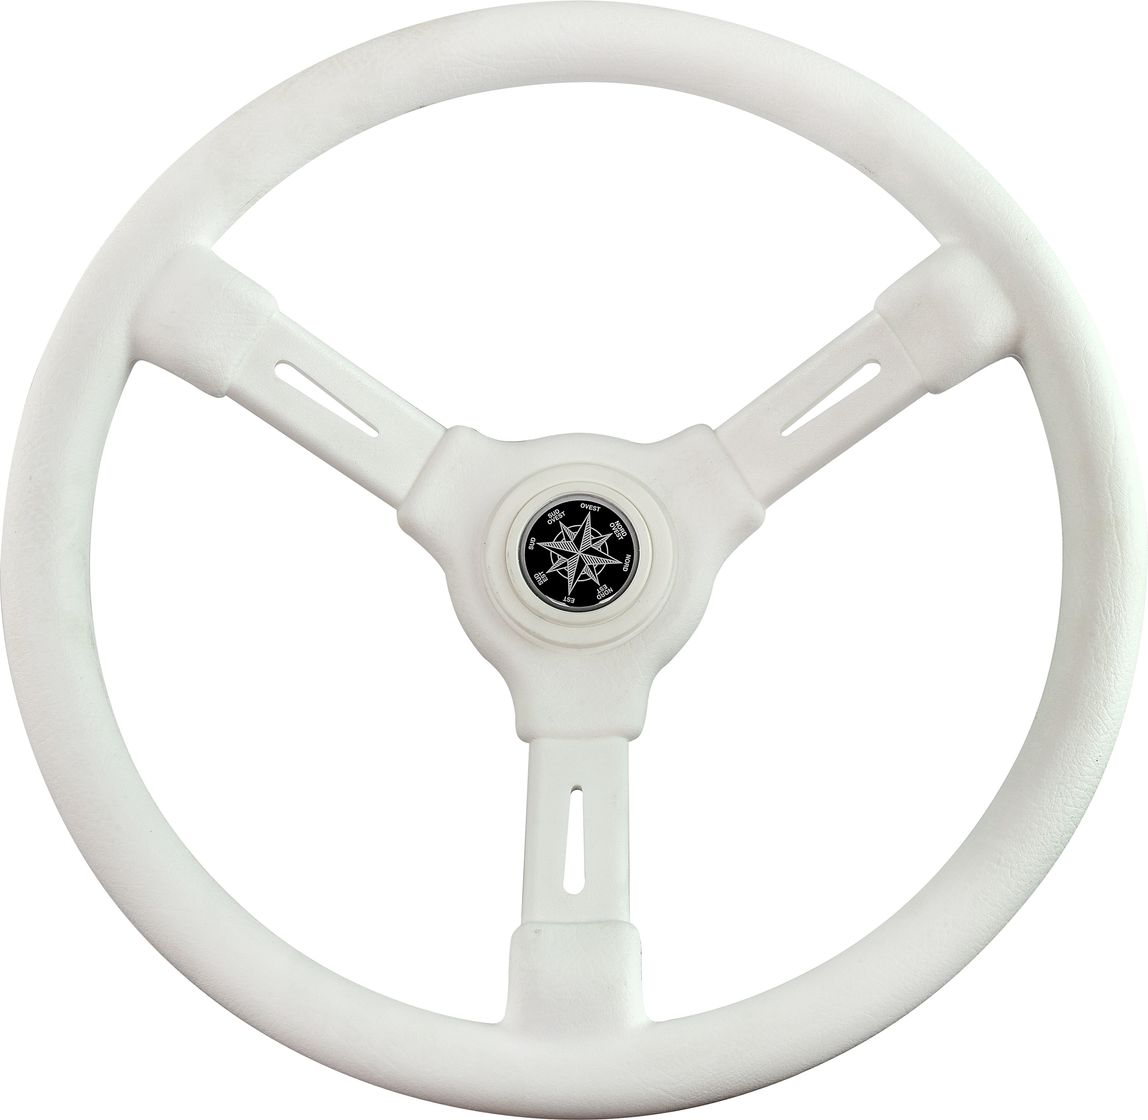 Рулевое колесо RIVIERA белый обод и спицы д. 350 мм VN8001-08 рулевое колесо riviera белый обод и спицы д 350 мм vn8001 08